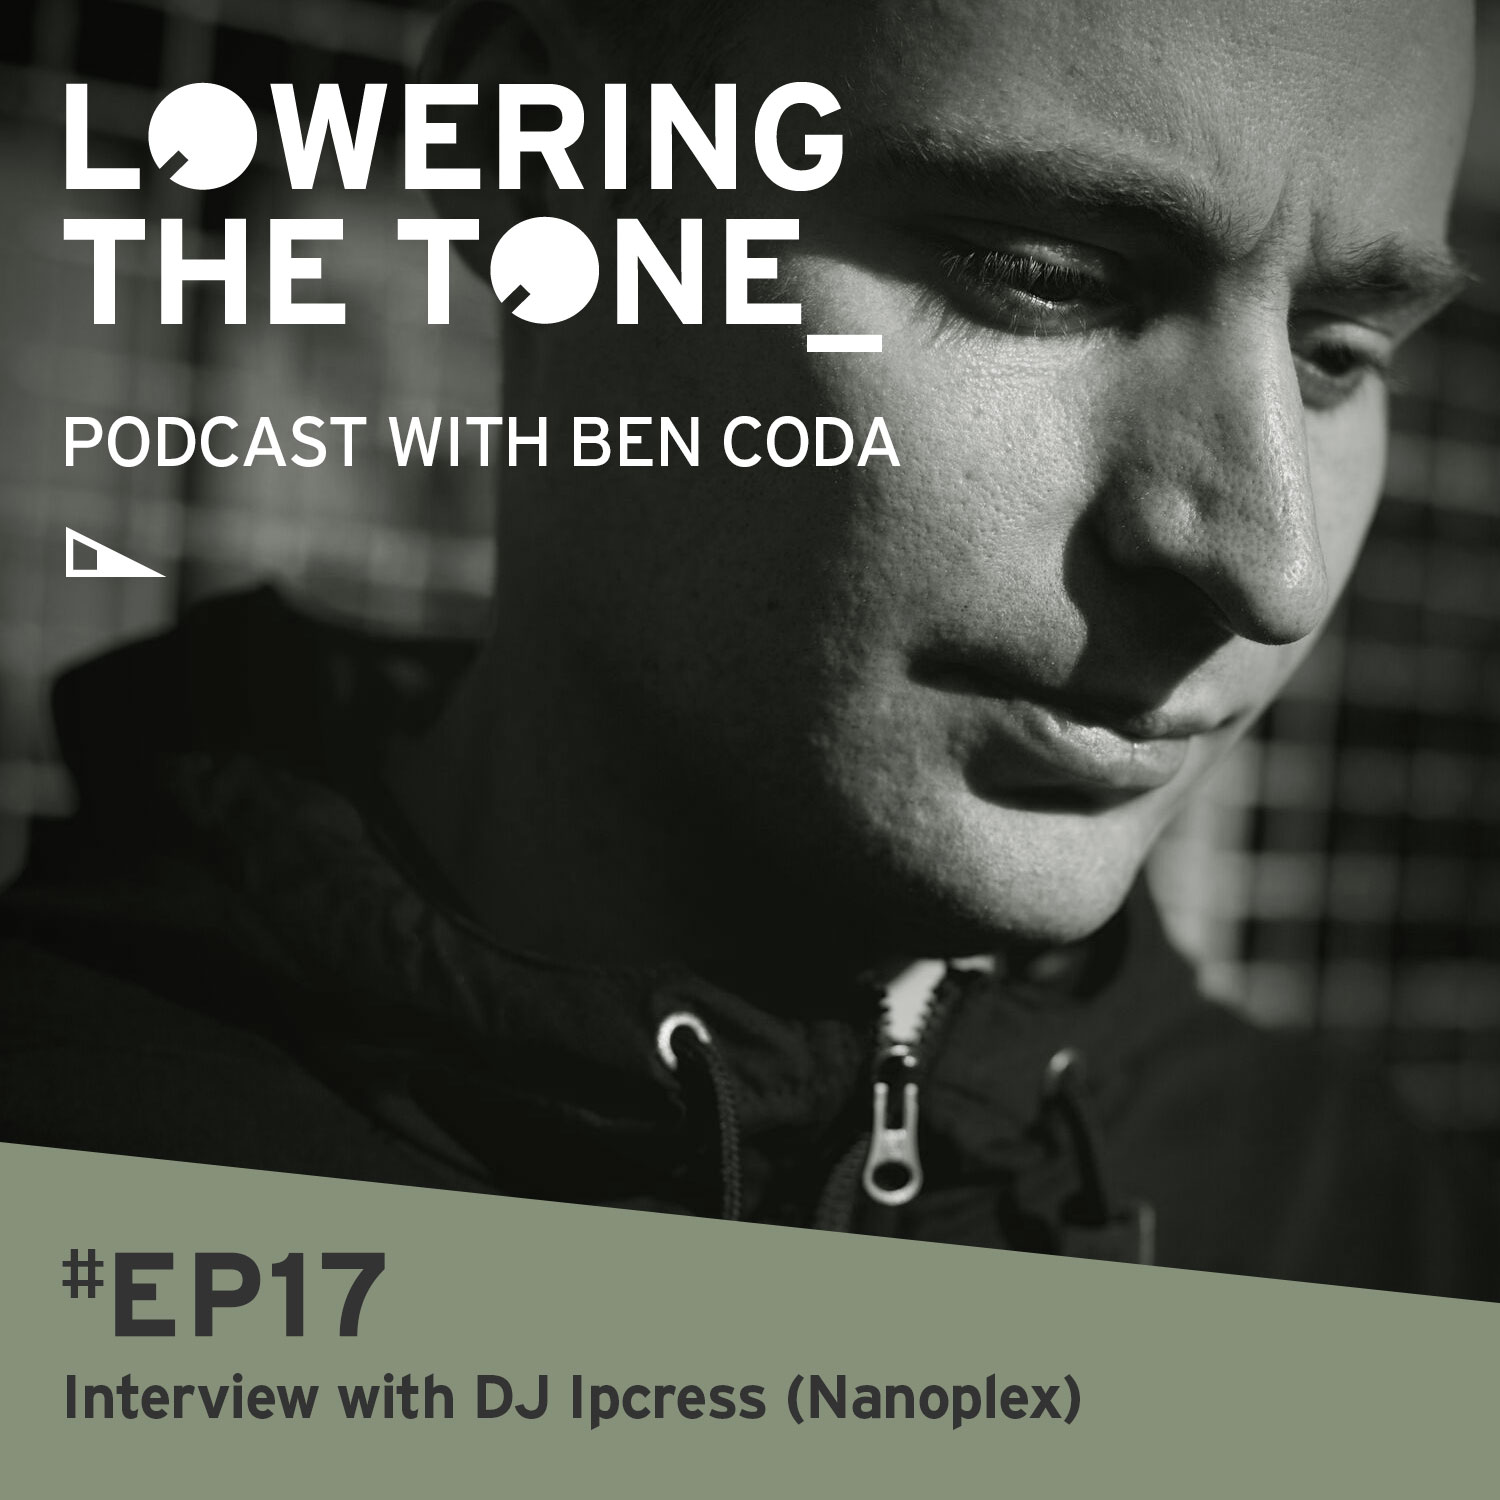 Ben Coda - 'Lowering The Tone' Episode 17 (With DJ Ipcress/ Nanoplex Interview)